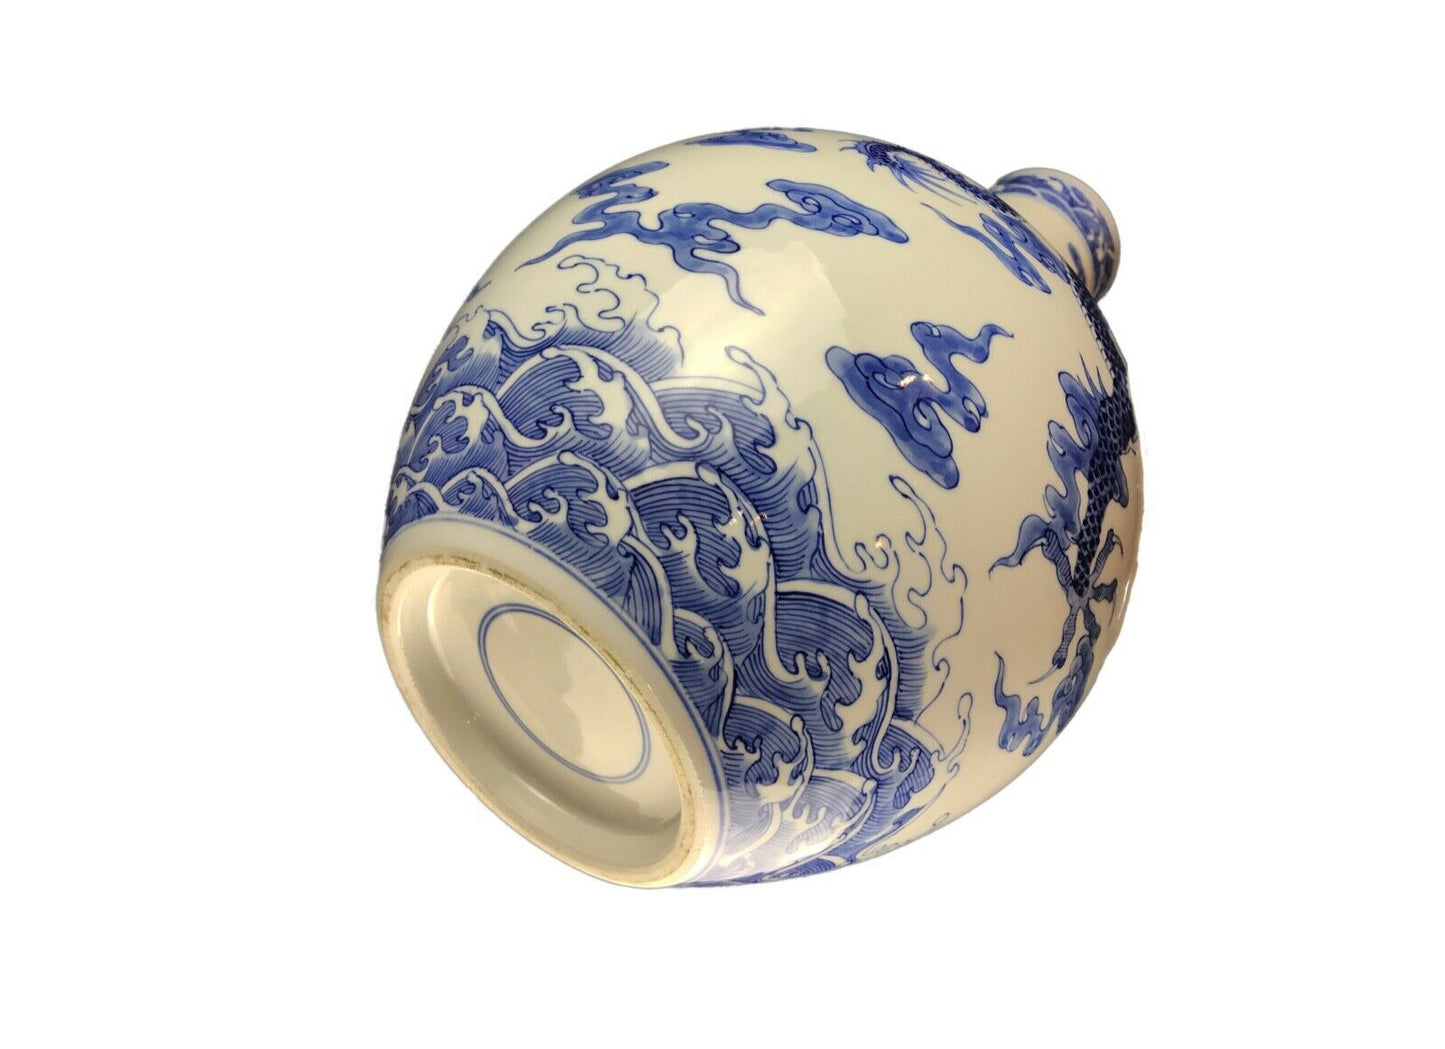 #2341 Chinoiserie Blue & White Porcelain Dragon Vase 15.25" H